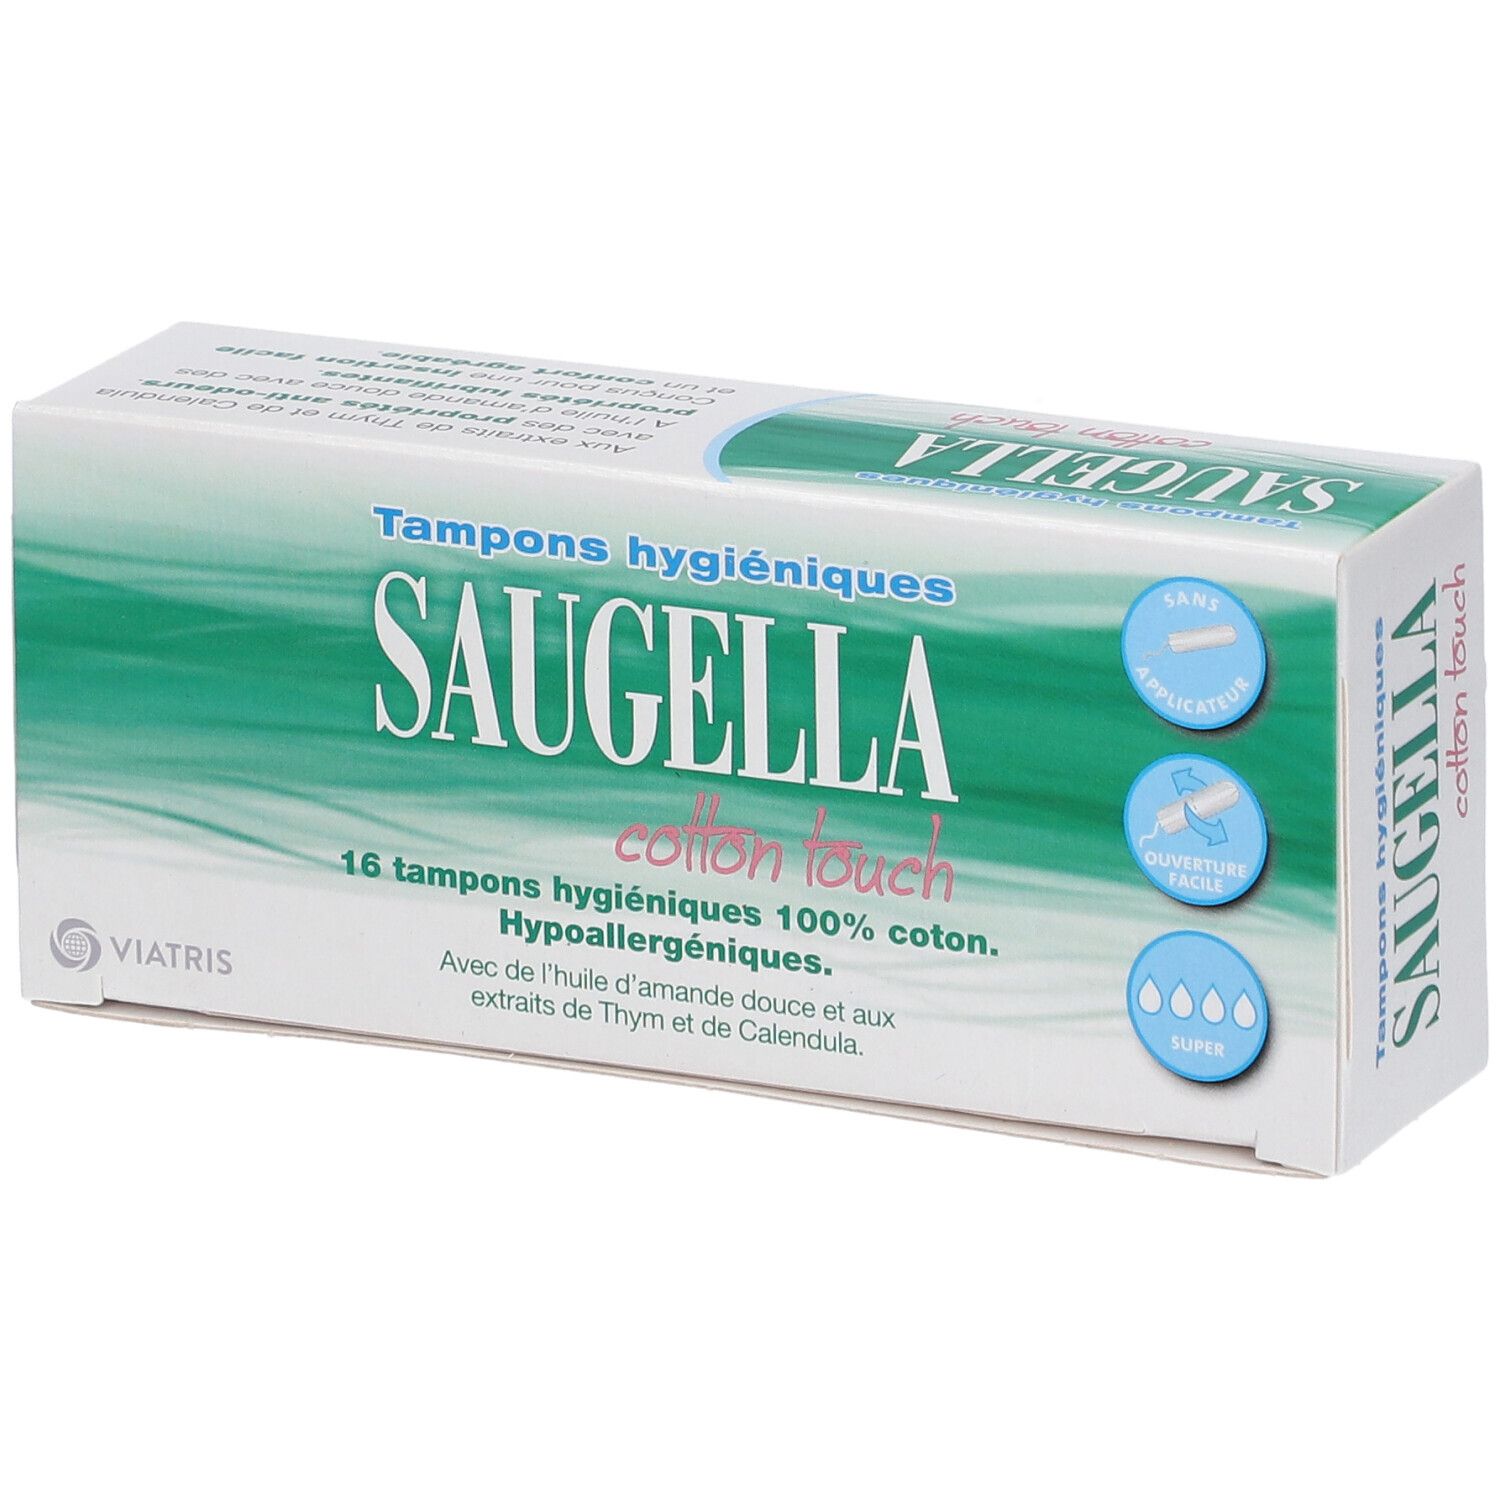 Saugella Cotton Touch Tampons hygiéniques Super